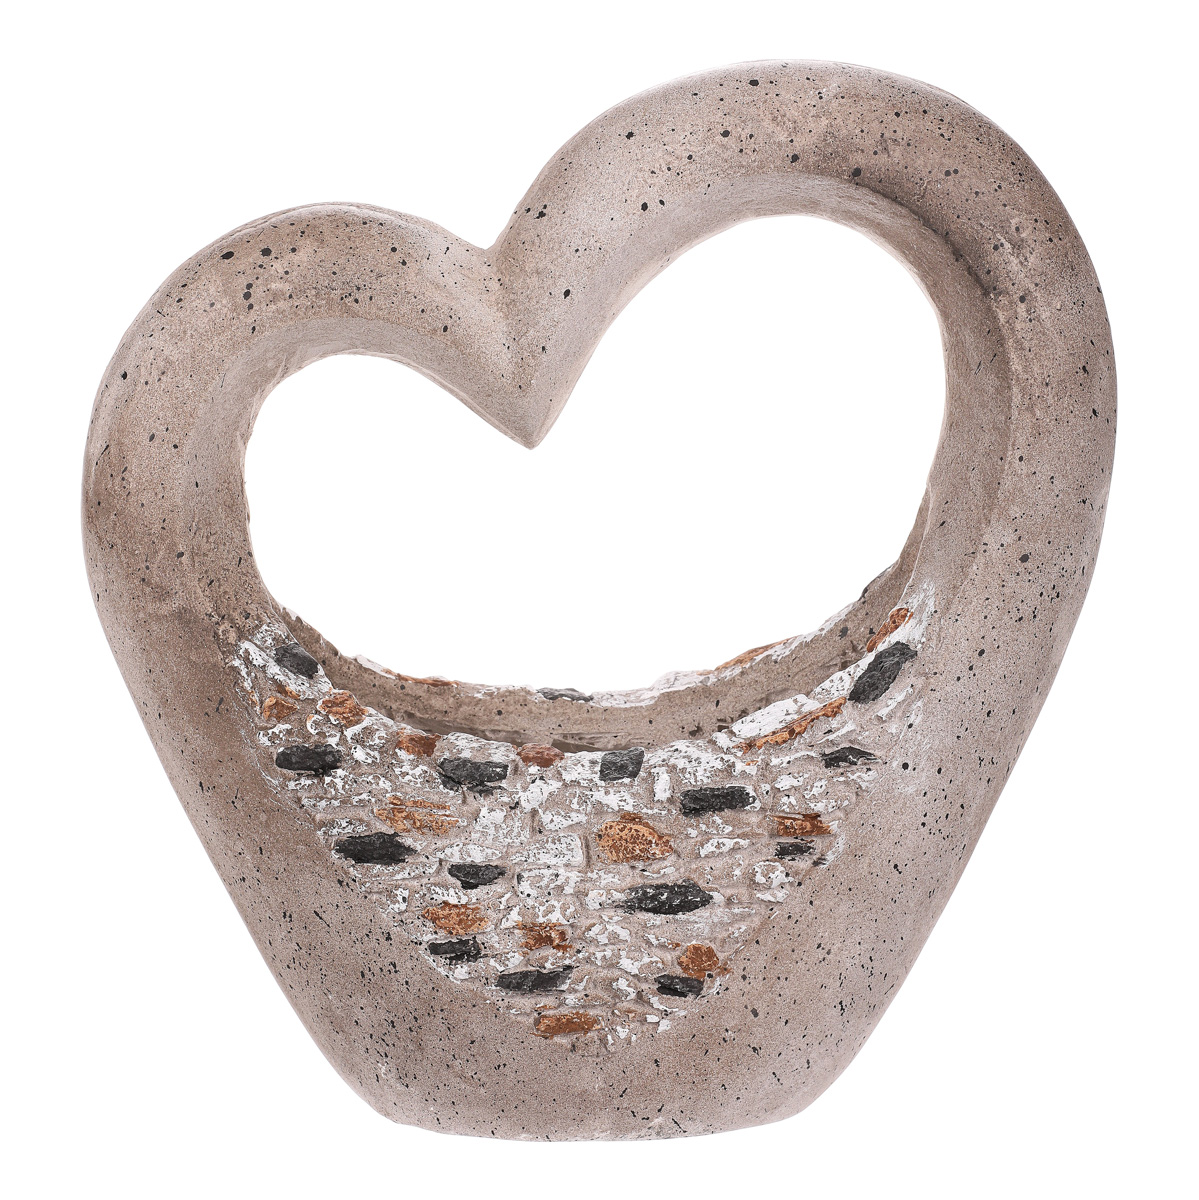 Obal na sukulenty z magneziové keramiky, ve tvaru srdce.